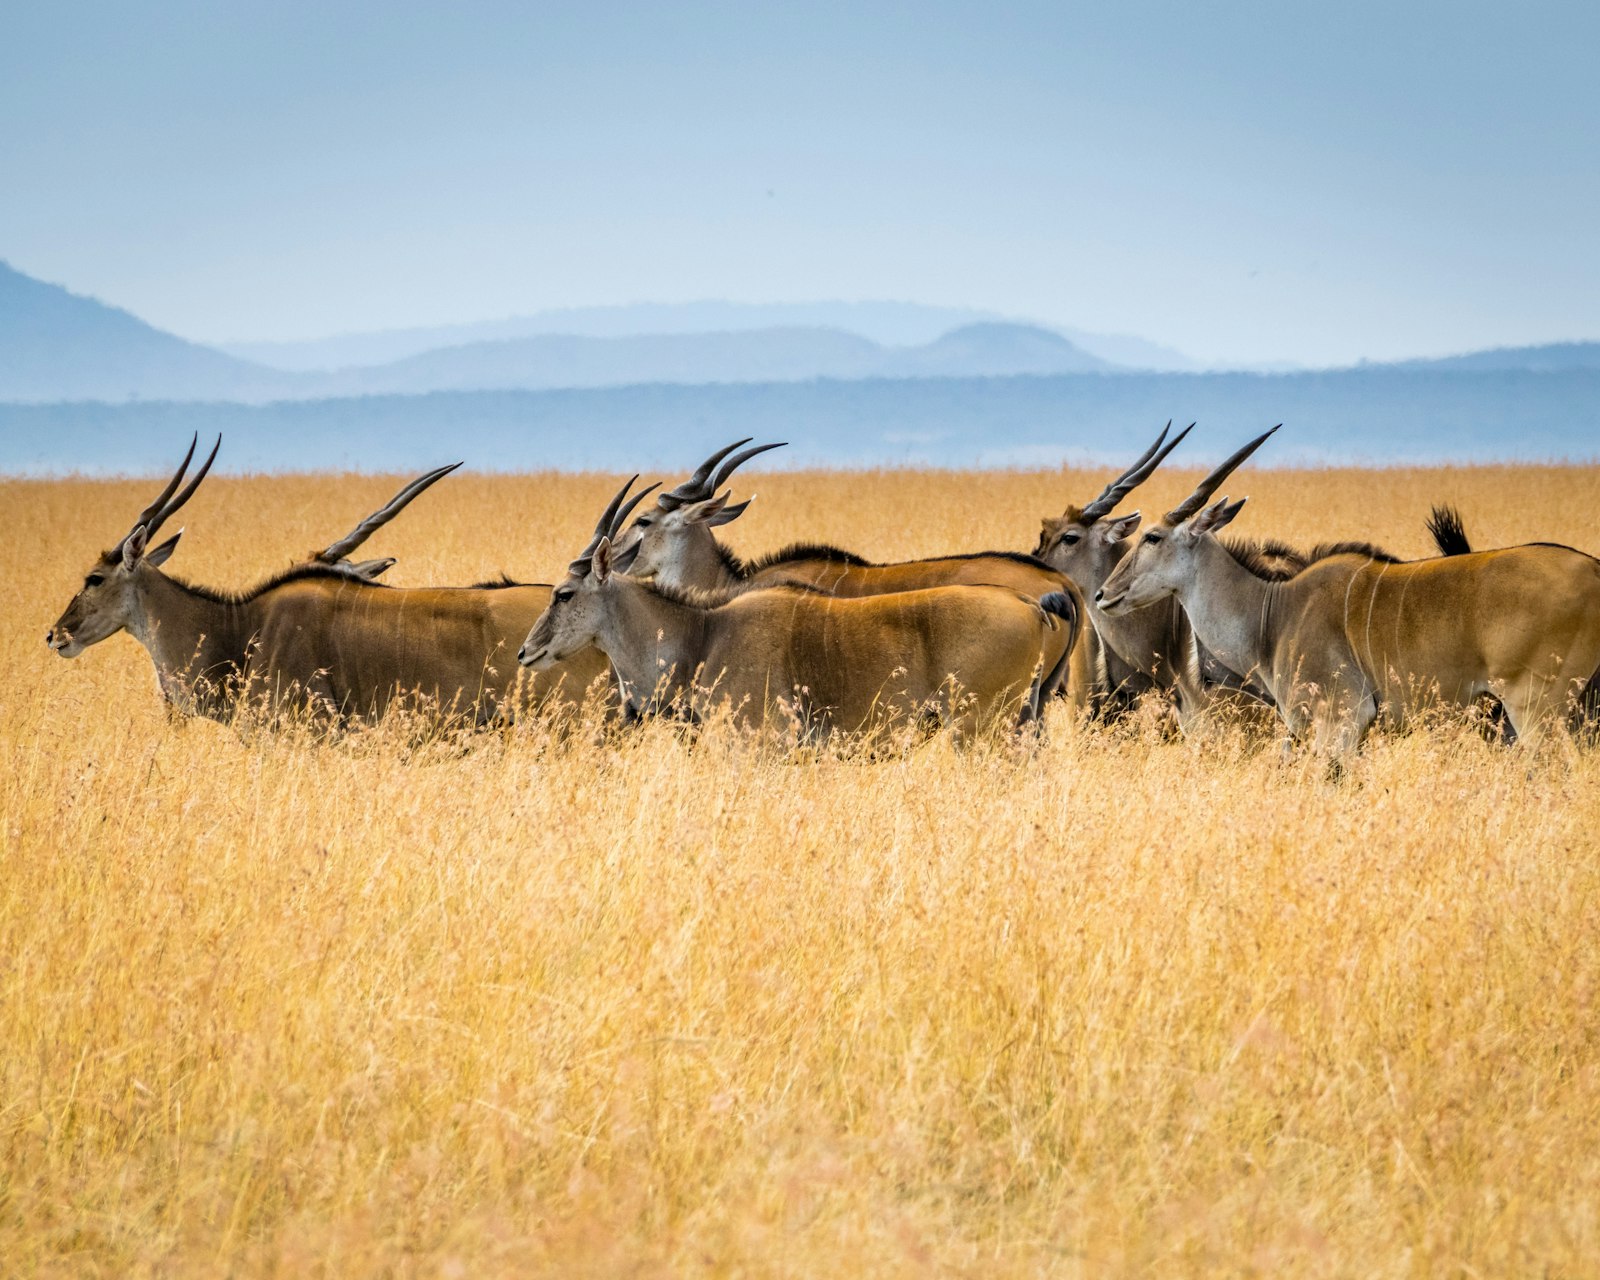 Nikon AF-S DX Nikkor 18-300mm F3.5-5.6G ED VR sample photo. Herd of antelopes on photography